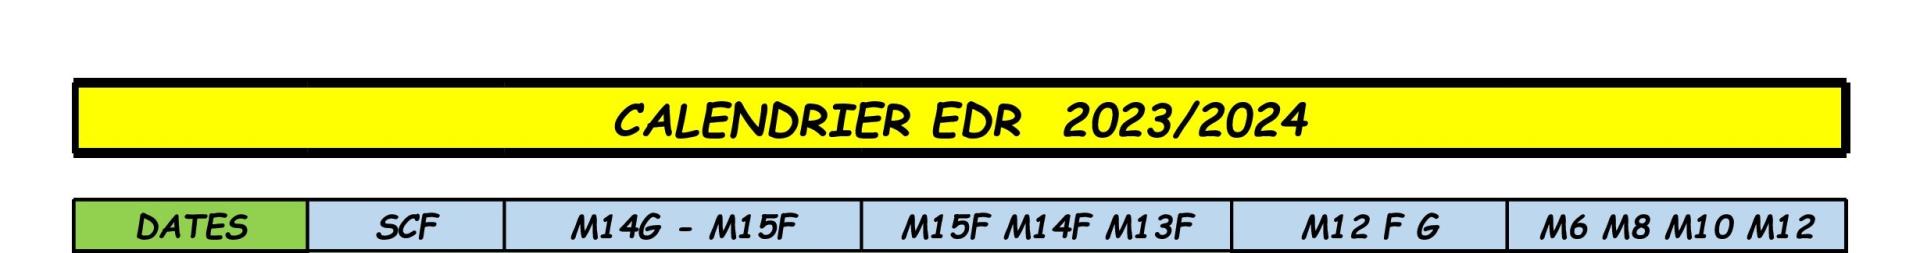 Calendrier edr 2023 2024 v4